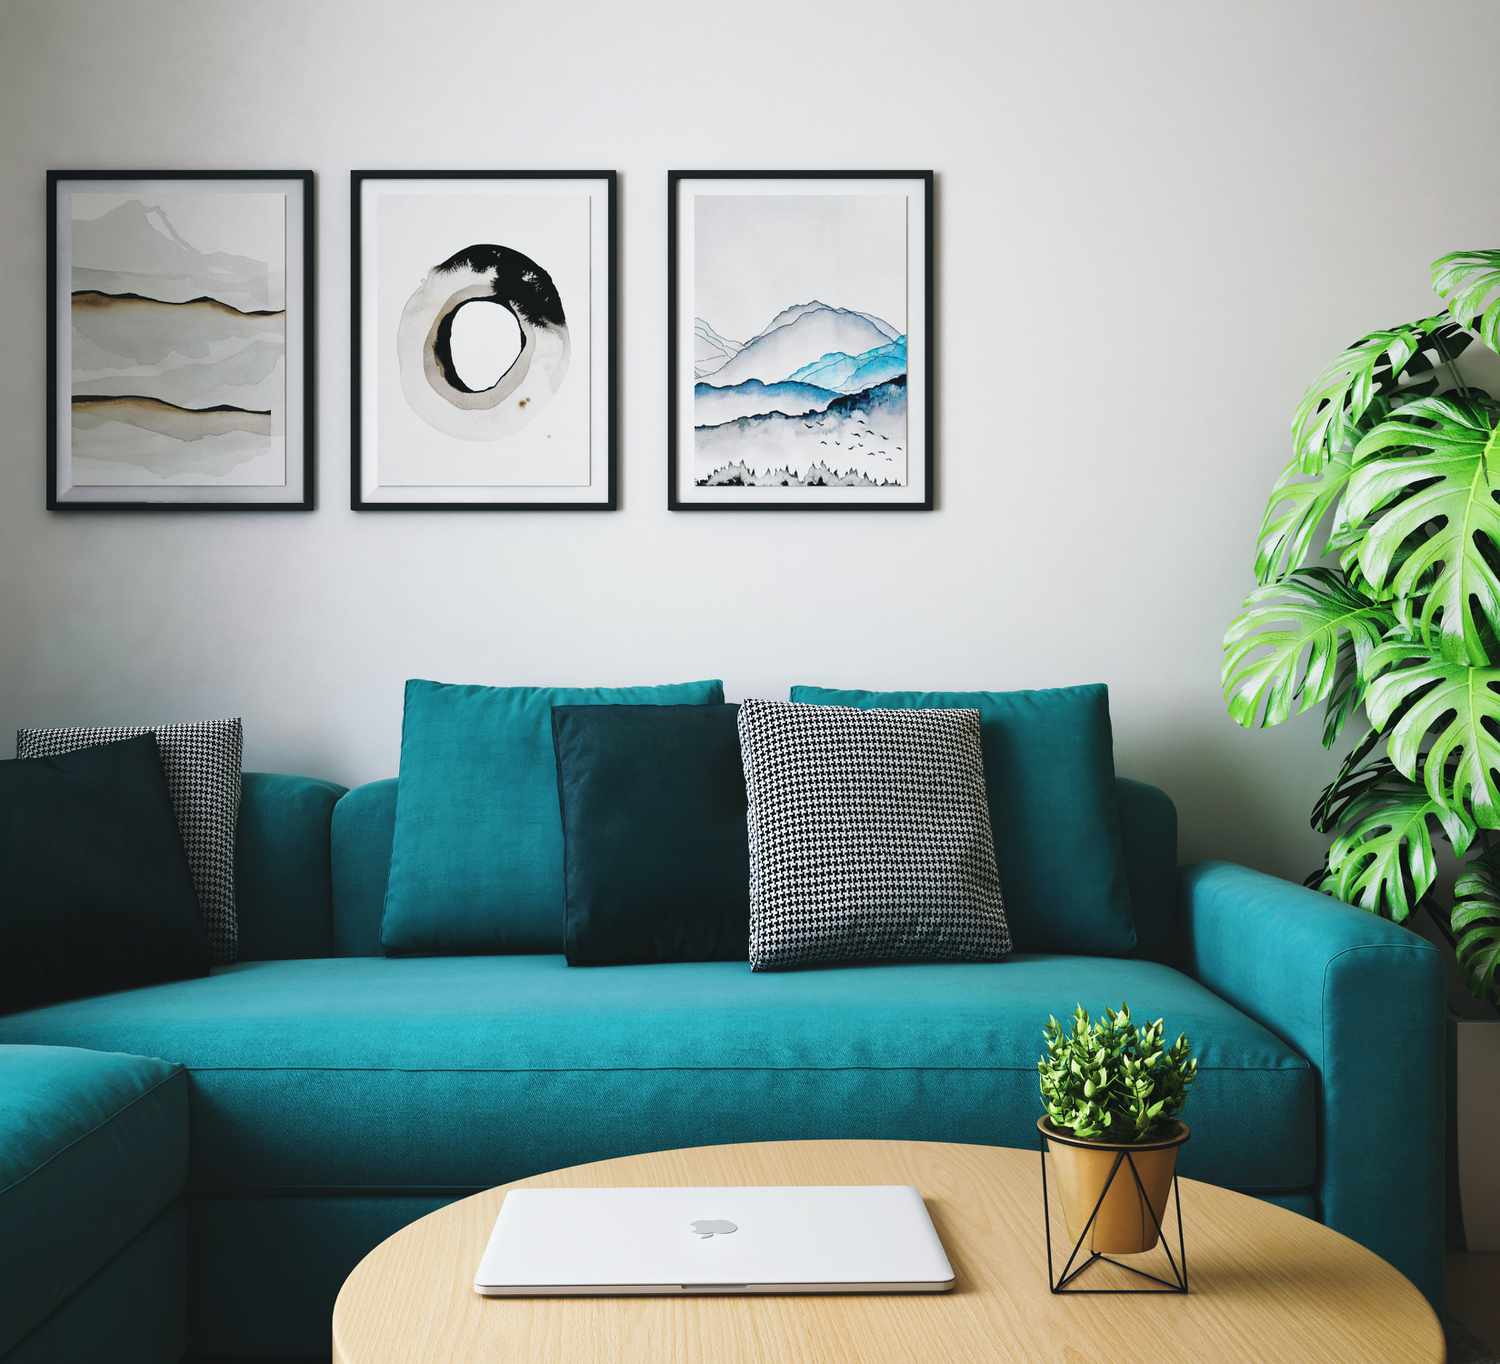 Modernes Wohnzimmer mit tealfarbenem Sofa und schwarzem Kunstwerk